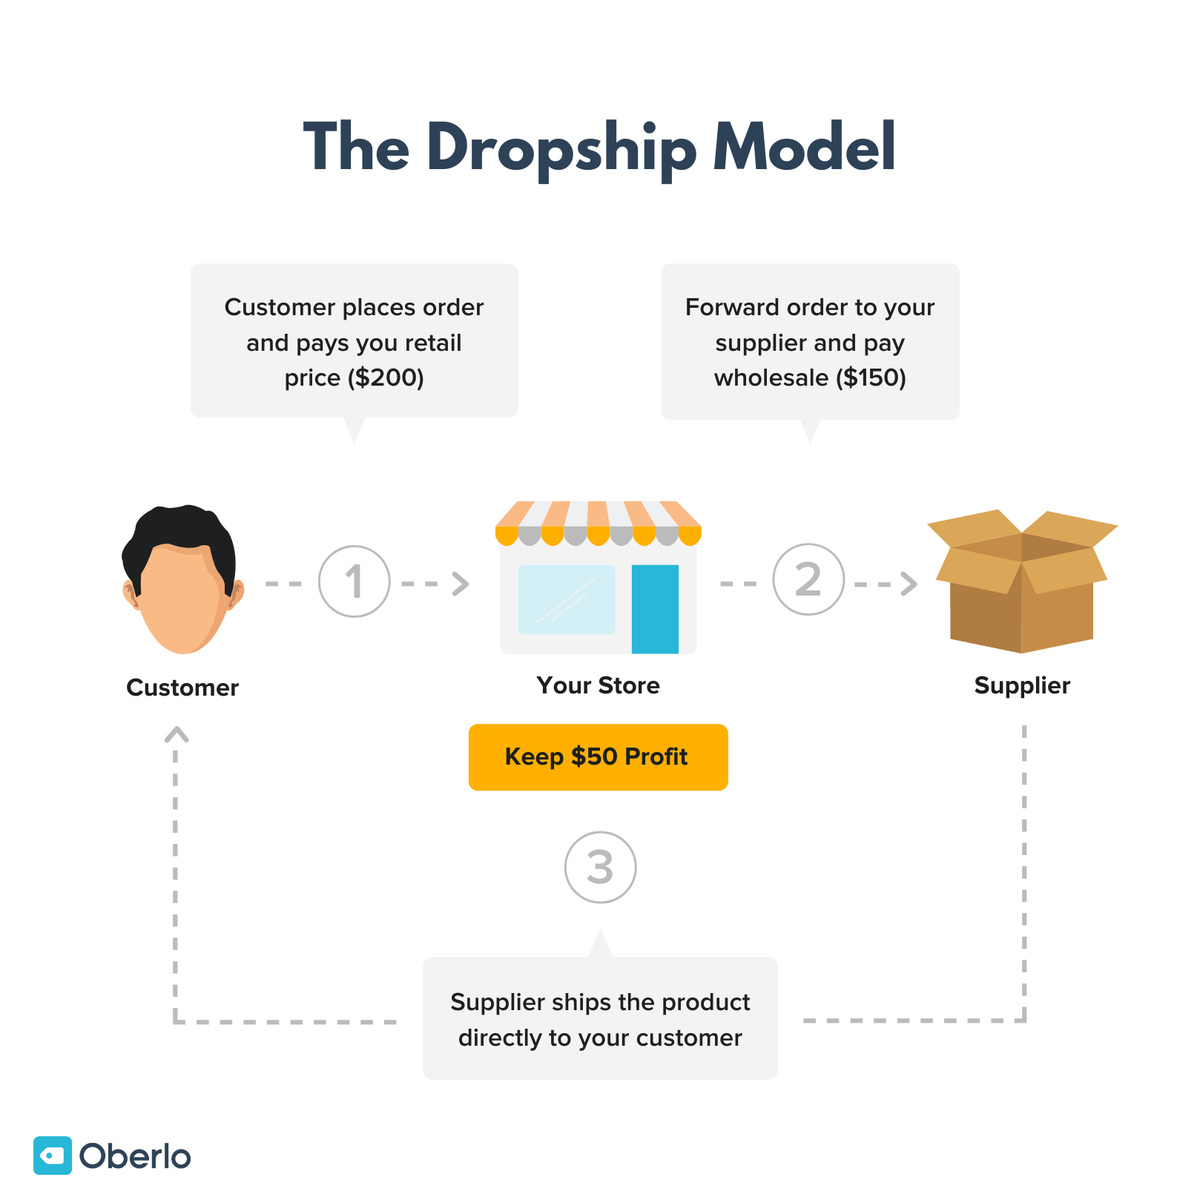 Slika prikazuje poslovni model dropship-a